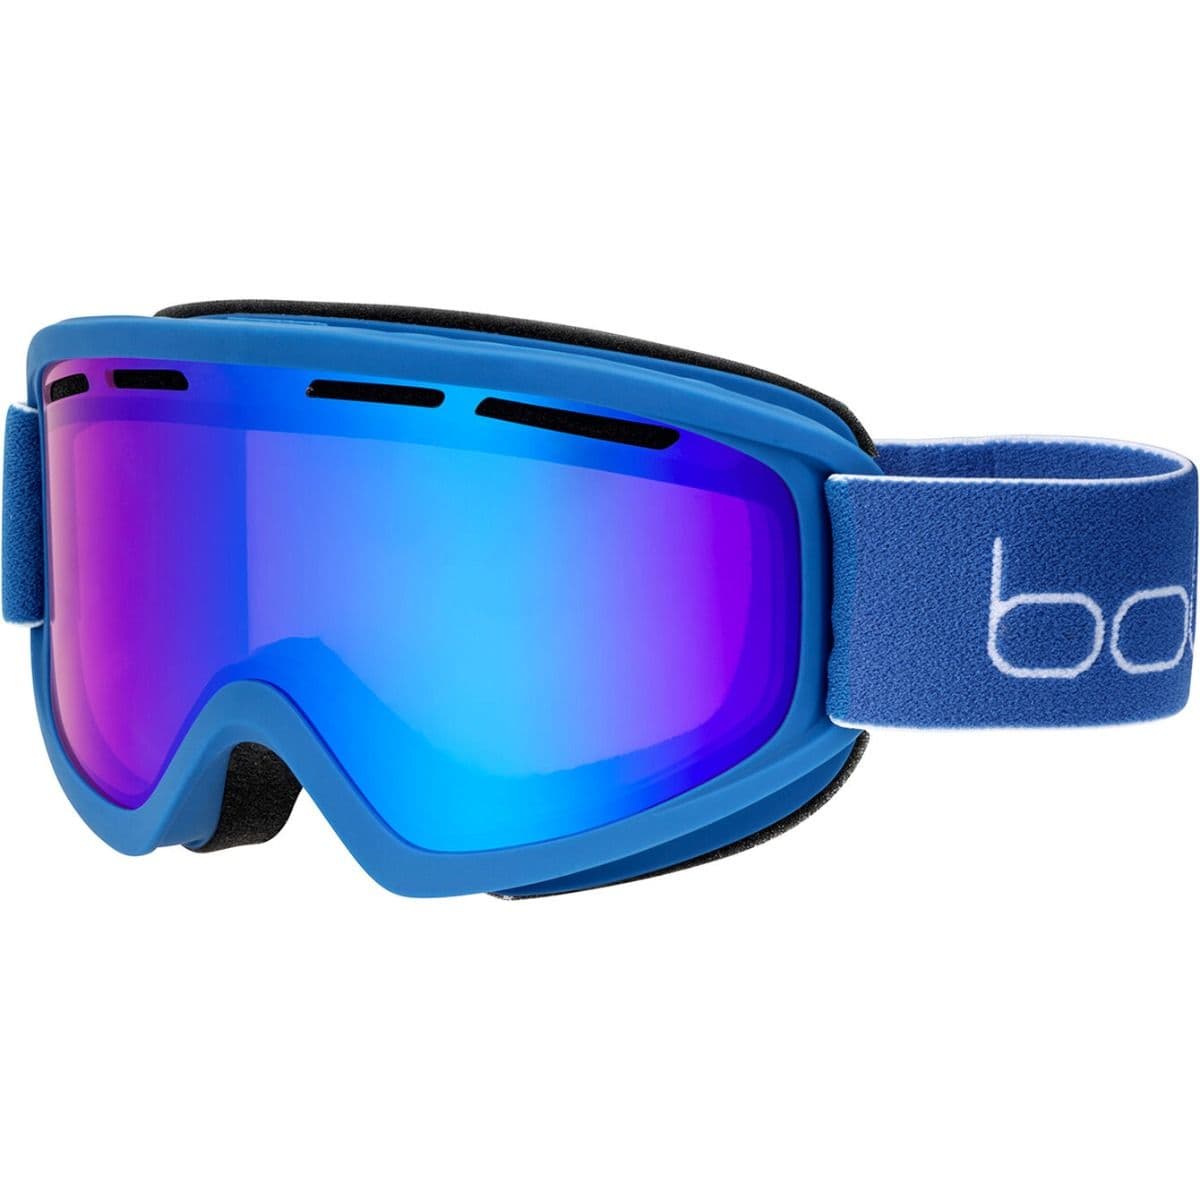 Bolle Freeze Plus Ski Goggles